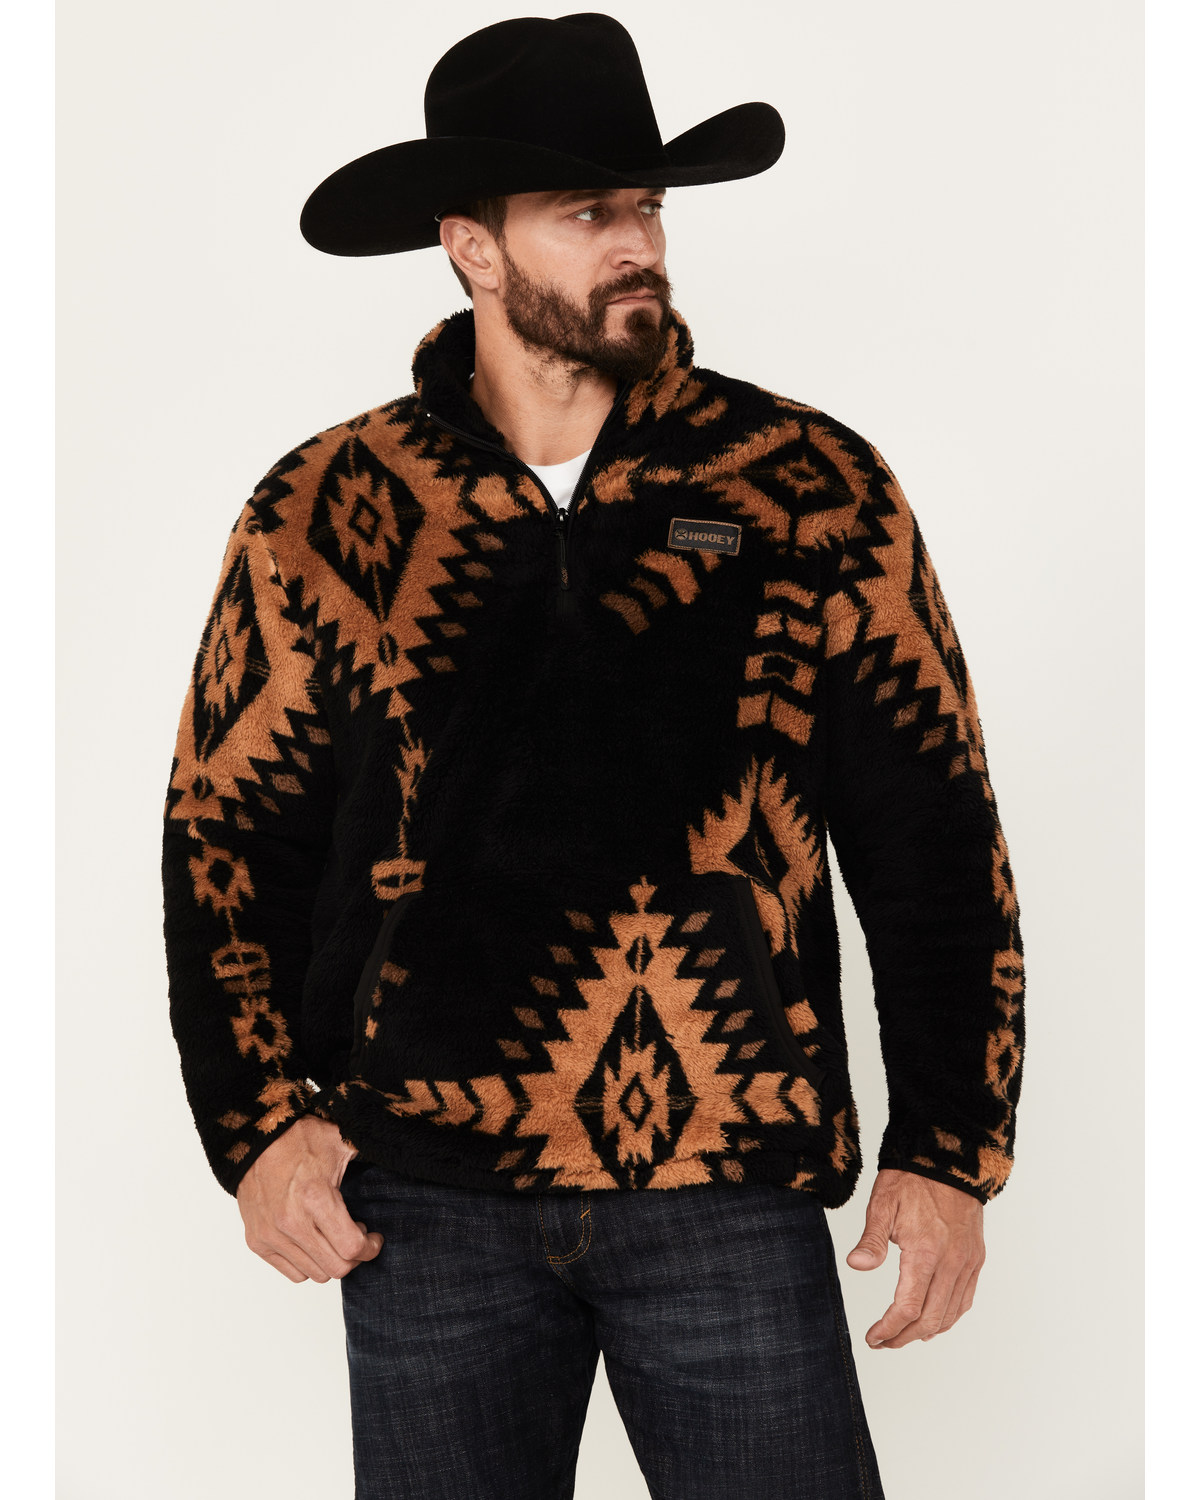 Hooey Men's Southwestern Print Fleece Pullover